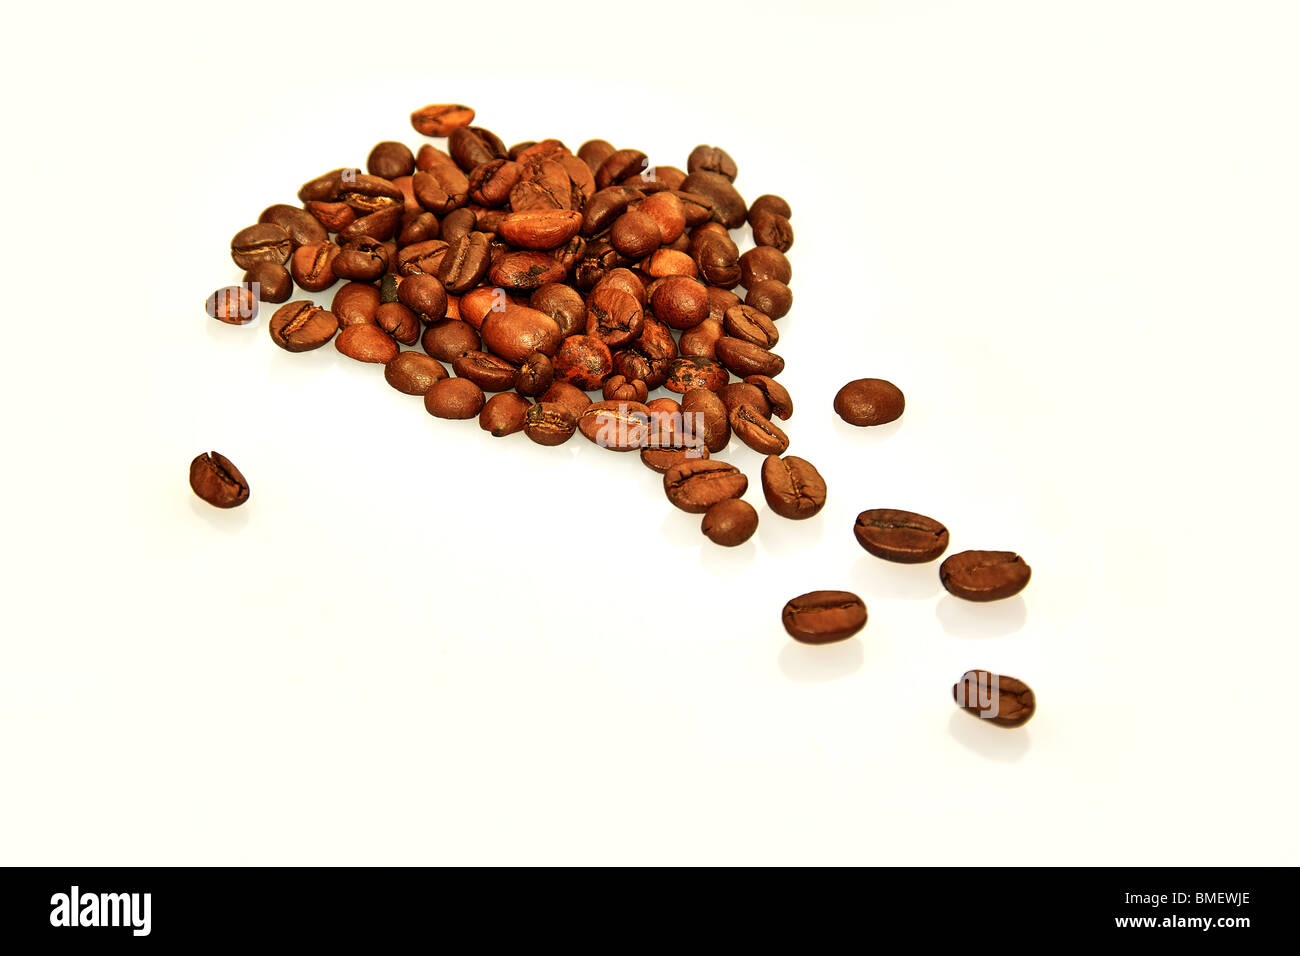 Mound of coffee beans Stock Photo